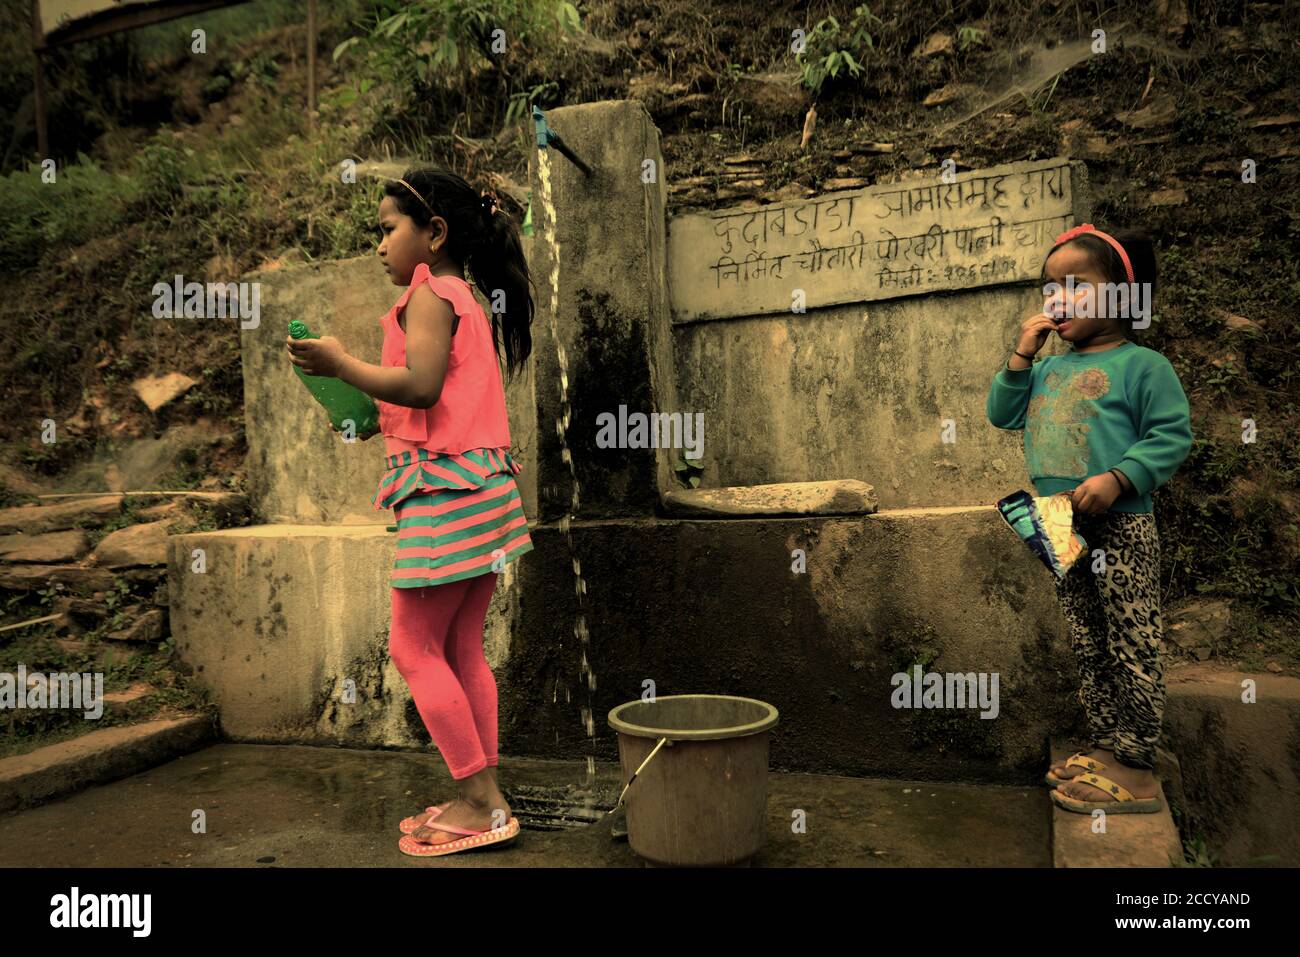 Enfants prenant de l'eau d'une source d'eau communautaire dans la région de Panchase, province de Gandaki Pradesh, Népal. Banque D'Images